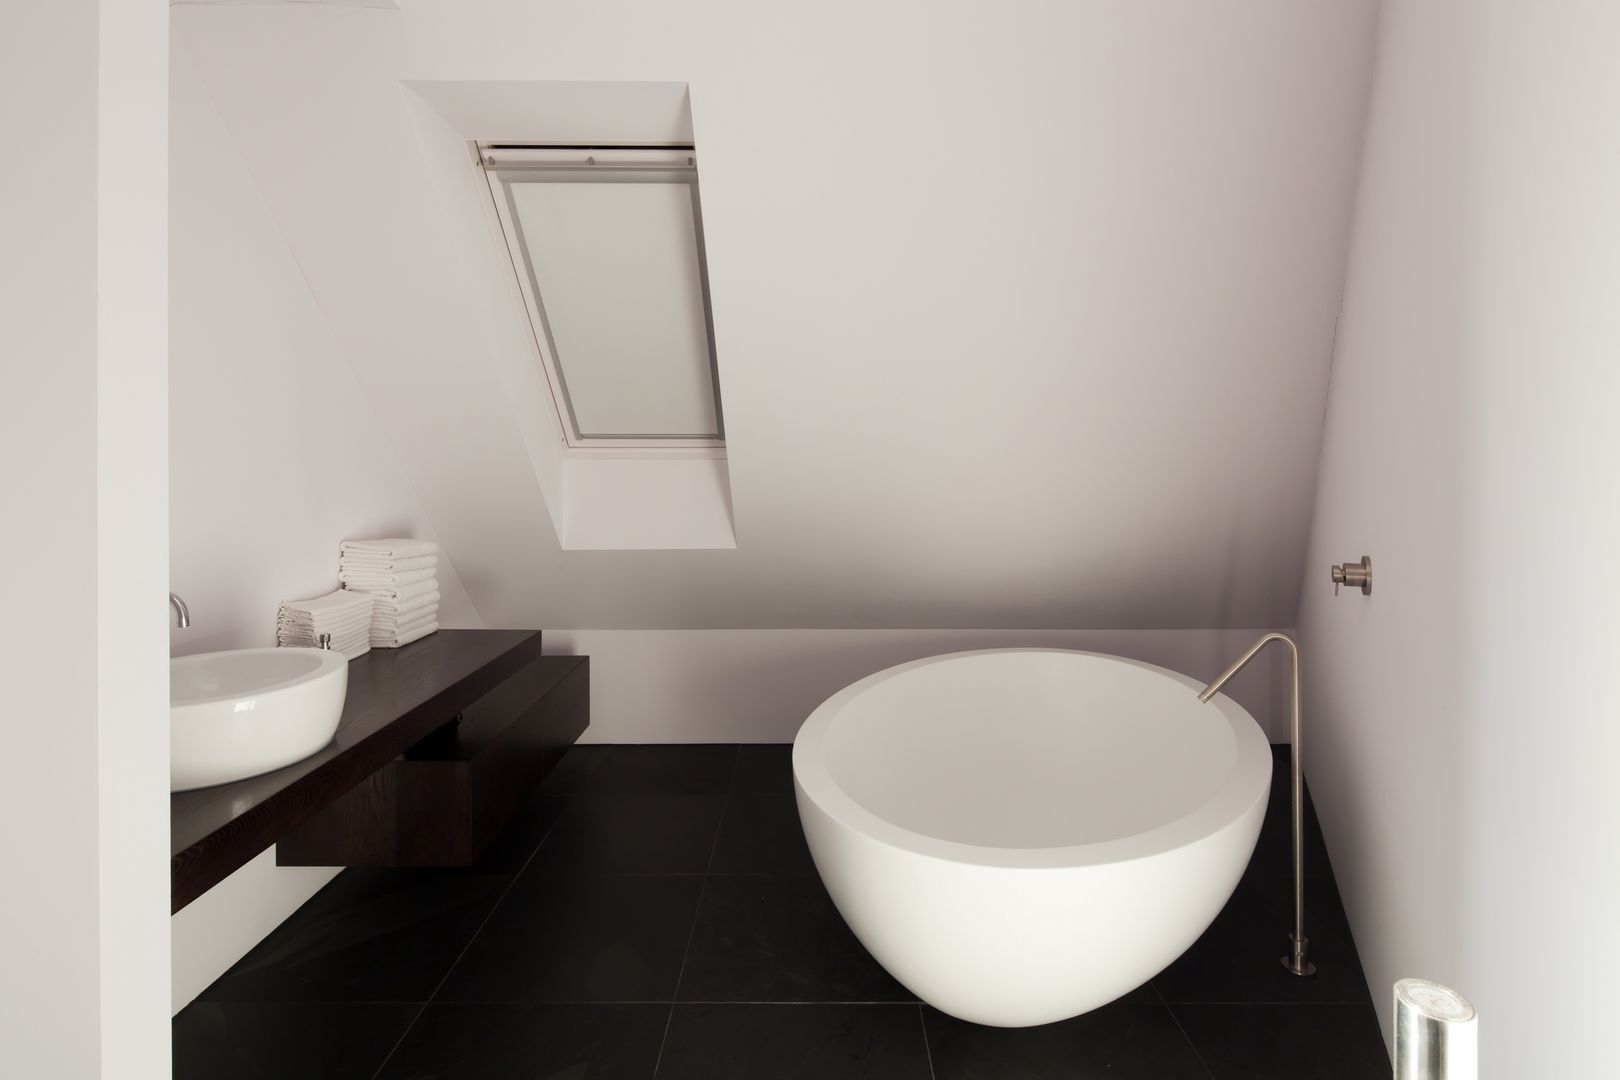 Woonhuis Uitgeest, Jan de Wit architect Jan de Wit architect Modern bathroom